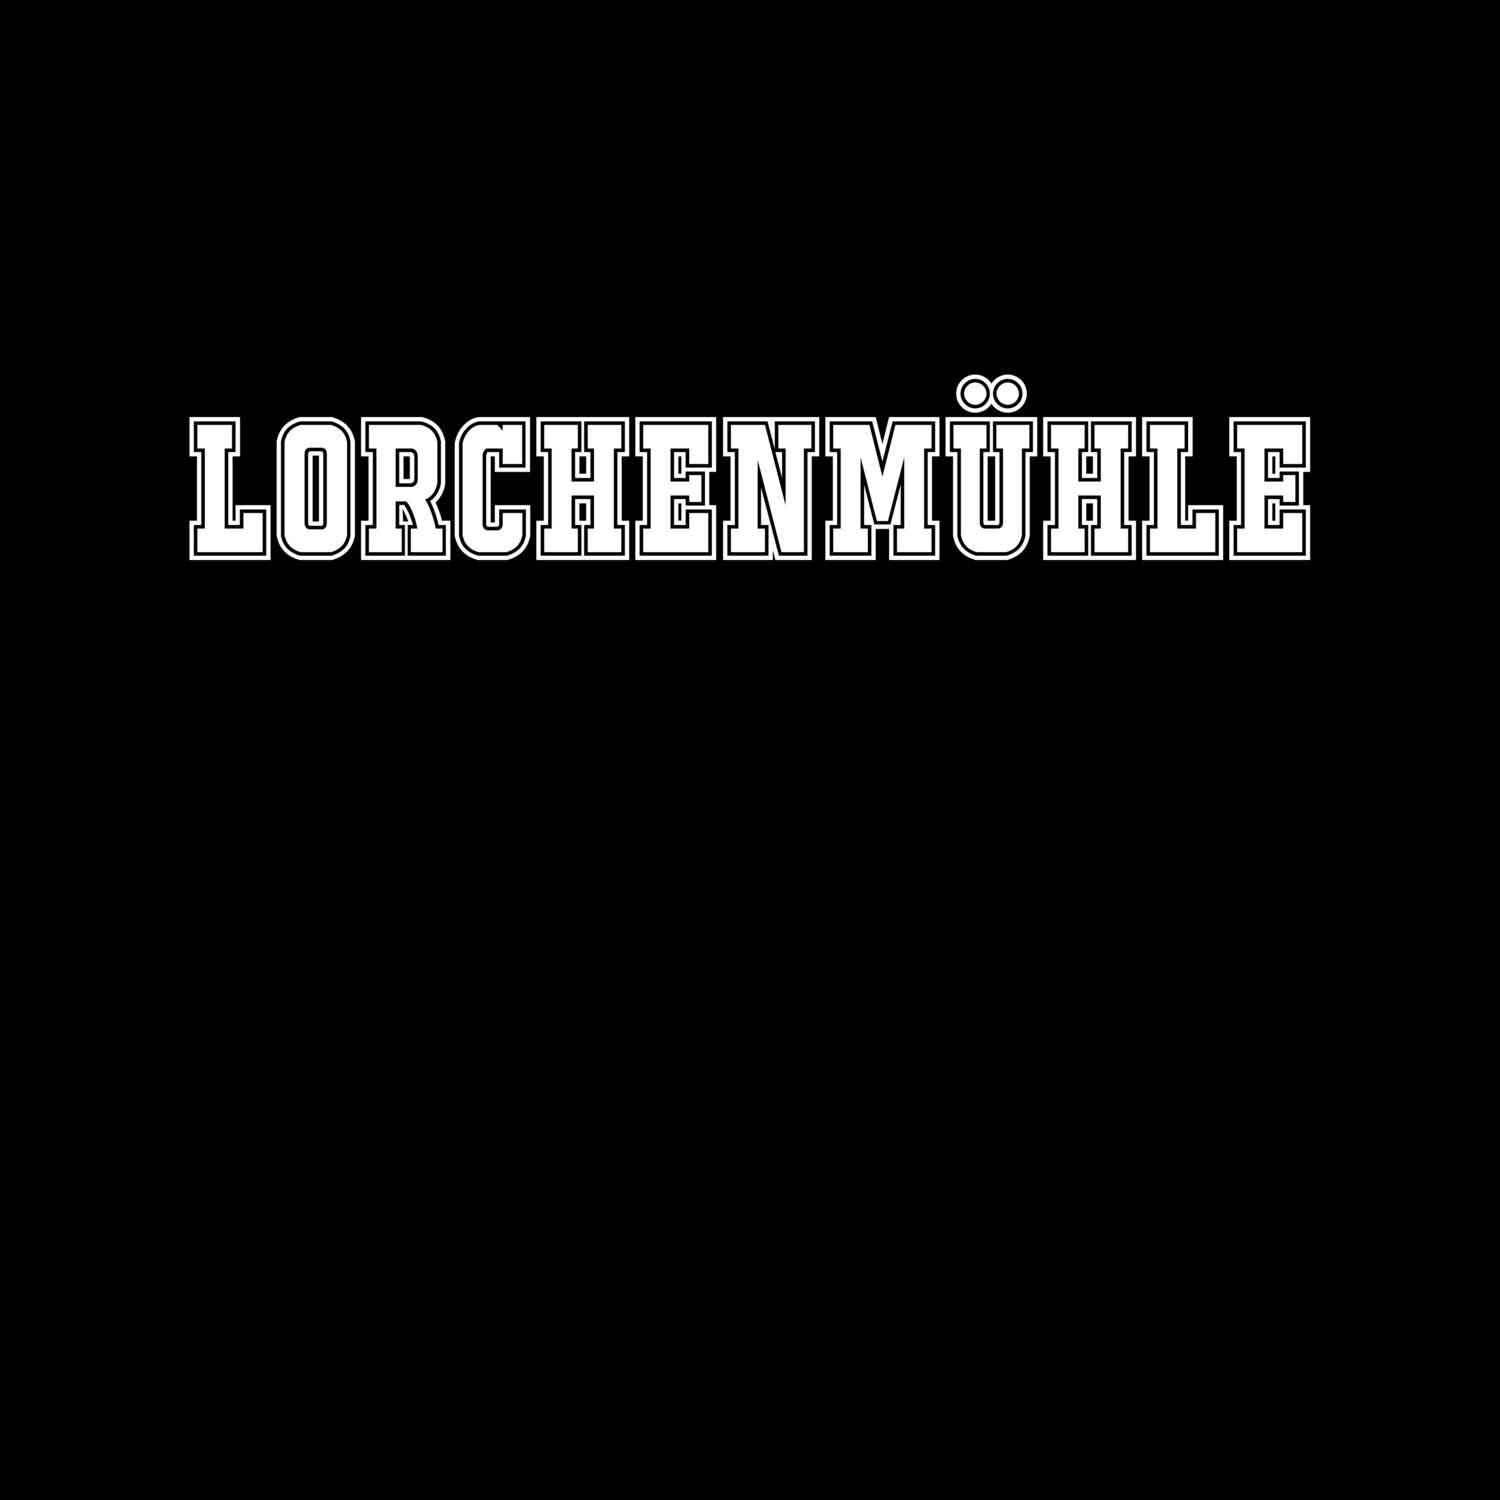 Lorchenmühle T-Shirt »Classic«